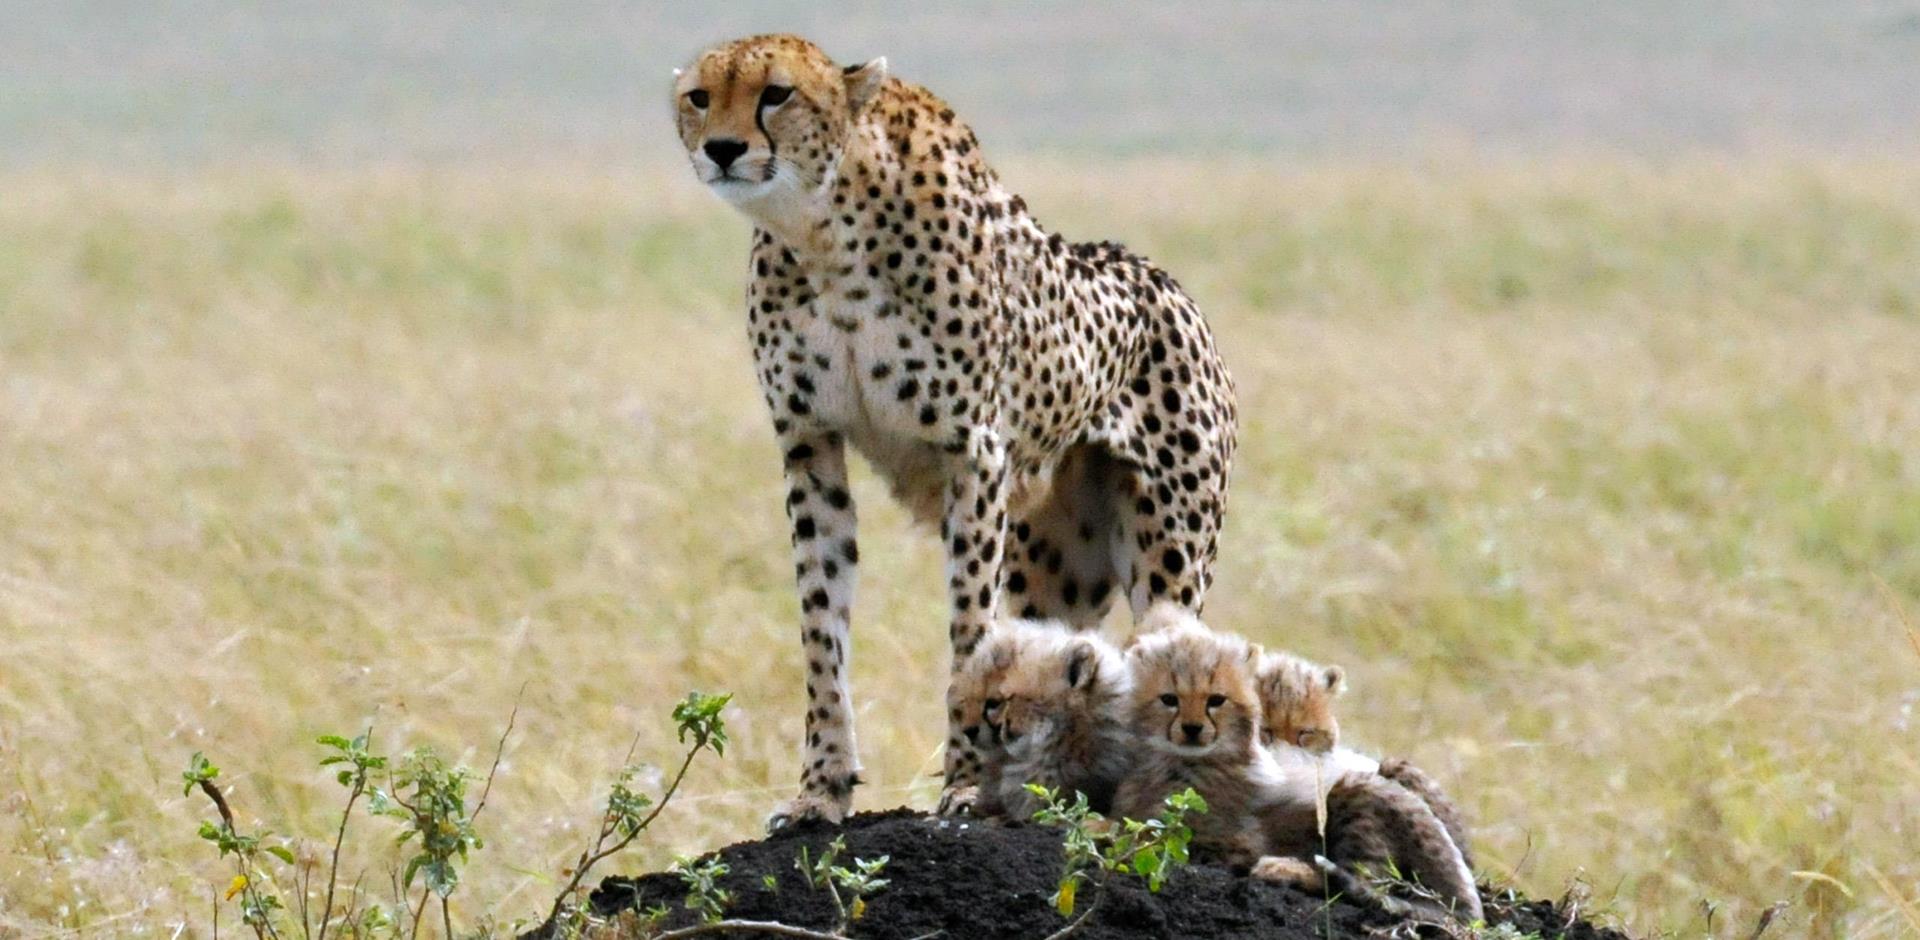 Cheetah and cubs, Kenya Safari, Africa